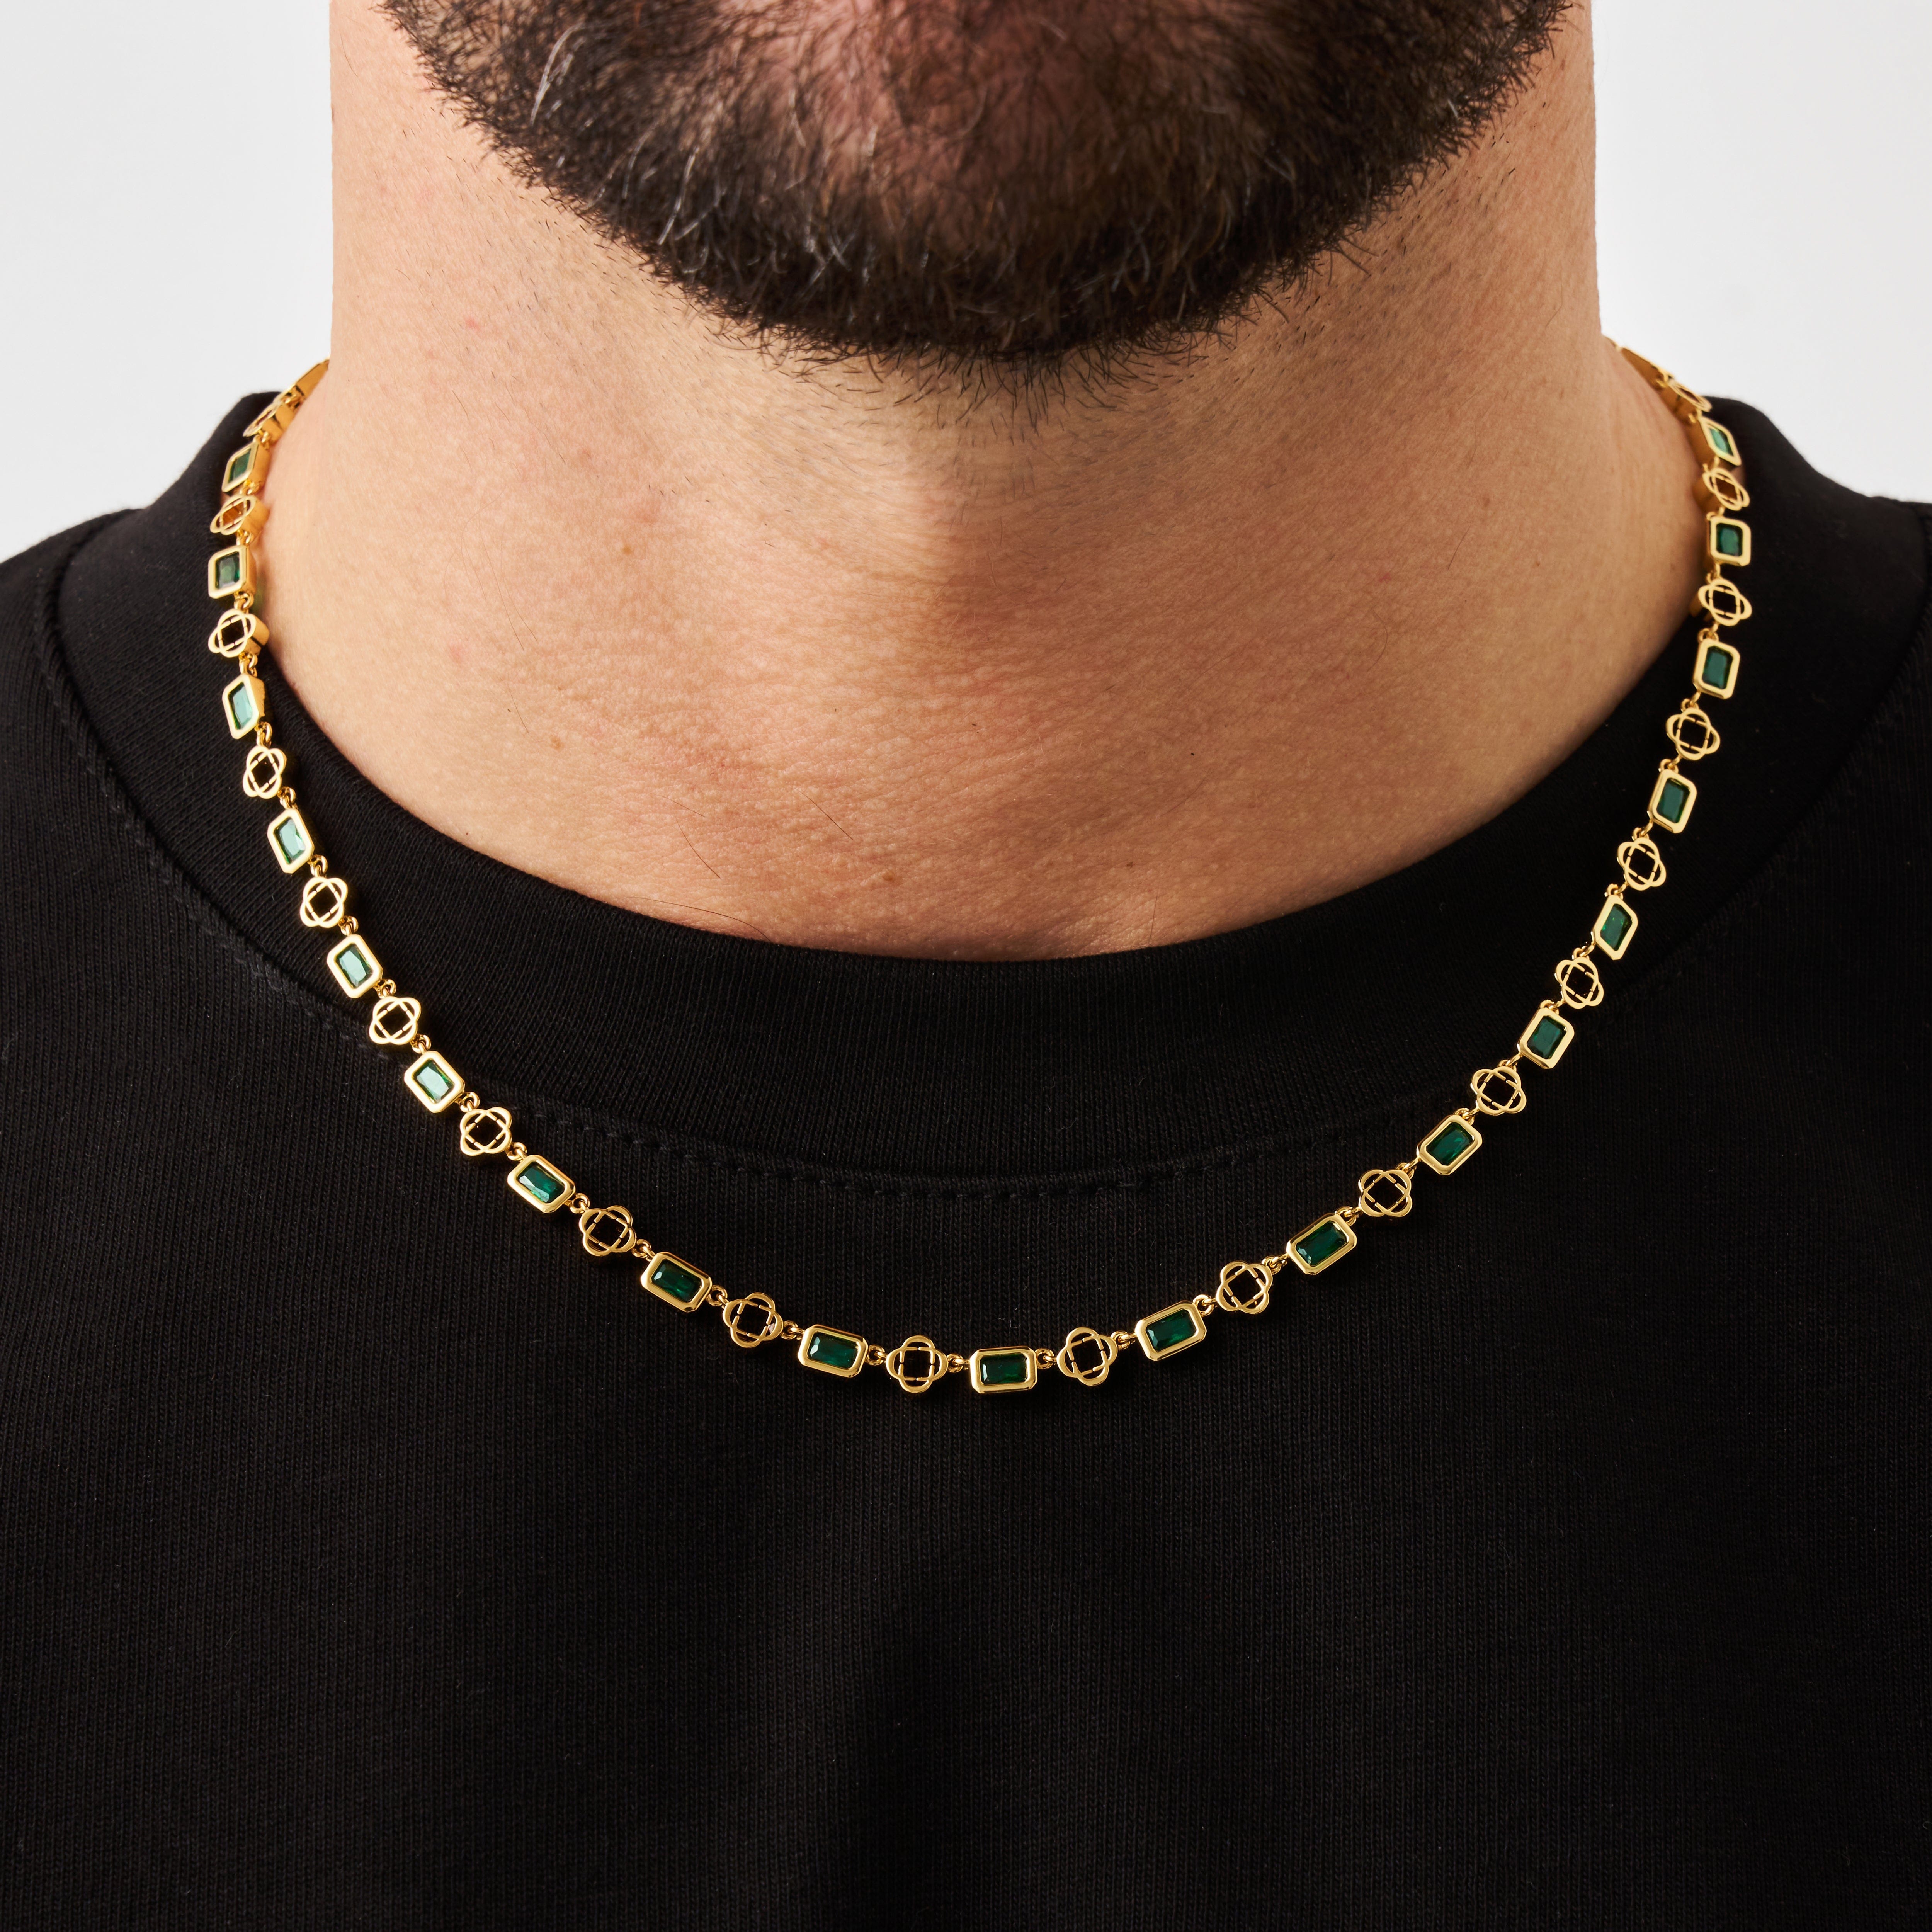 Grüne Edelstein-Klee-Halskette (Gold)